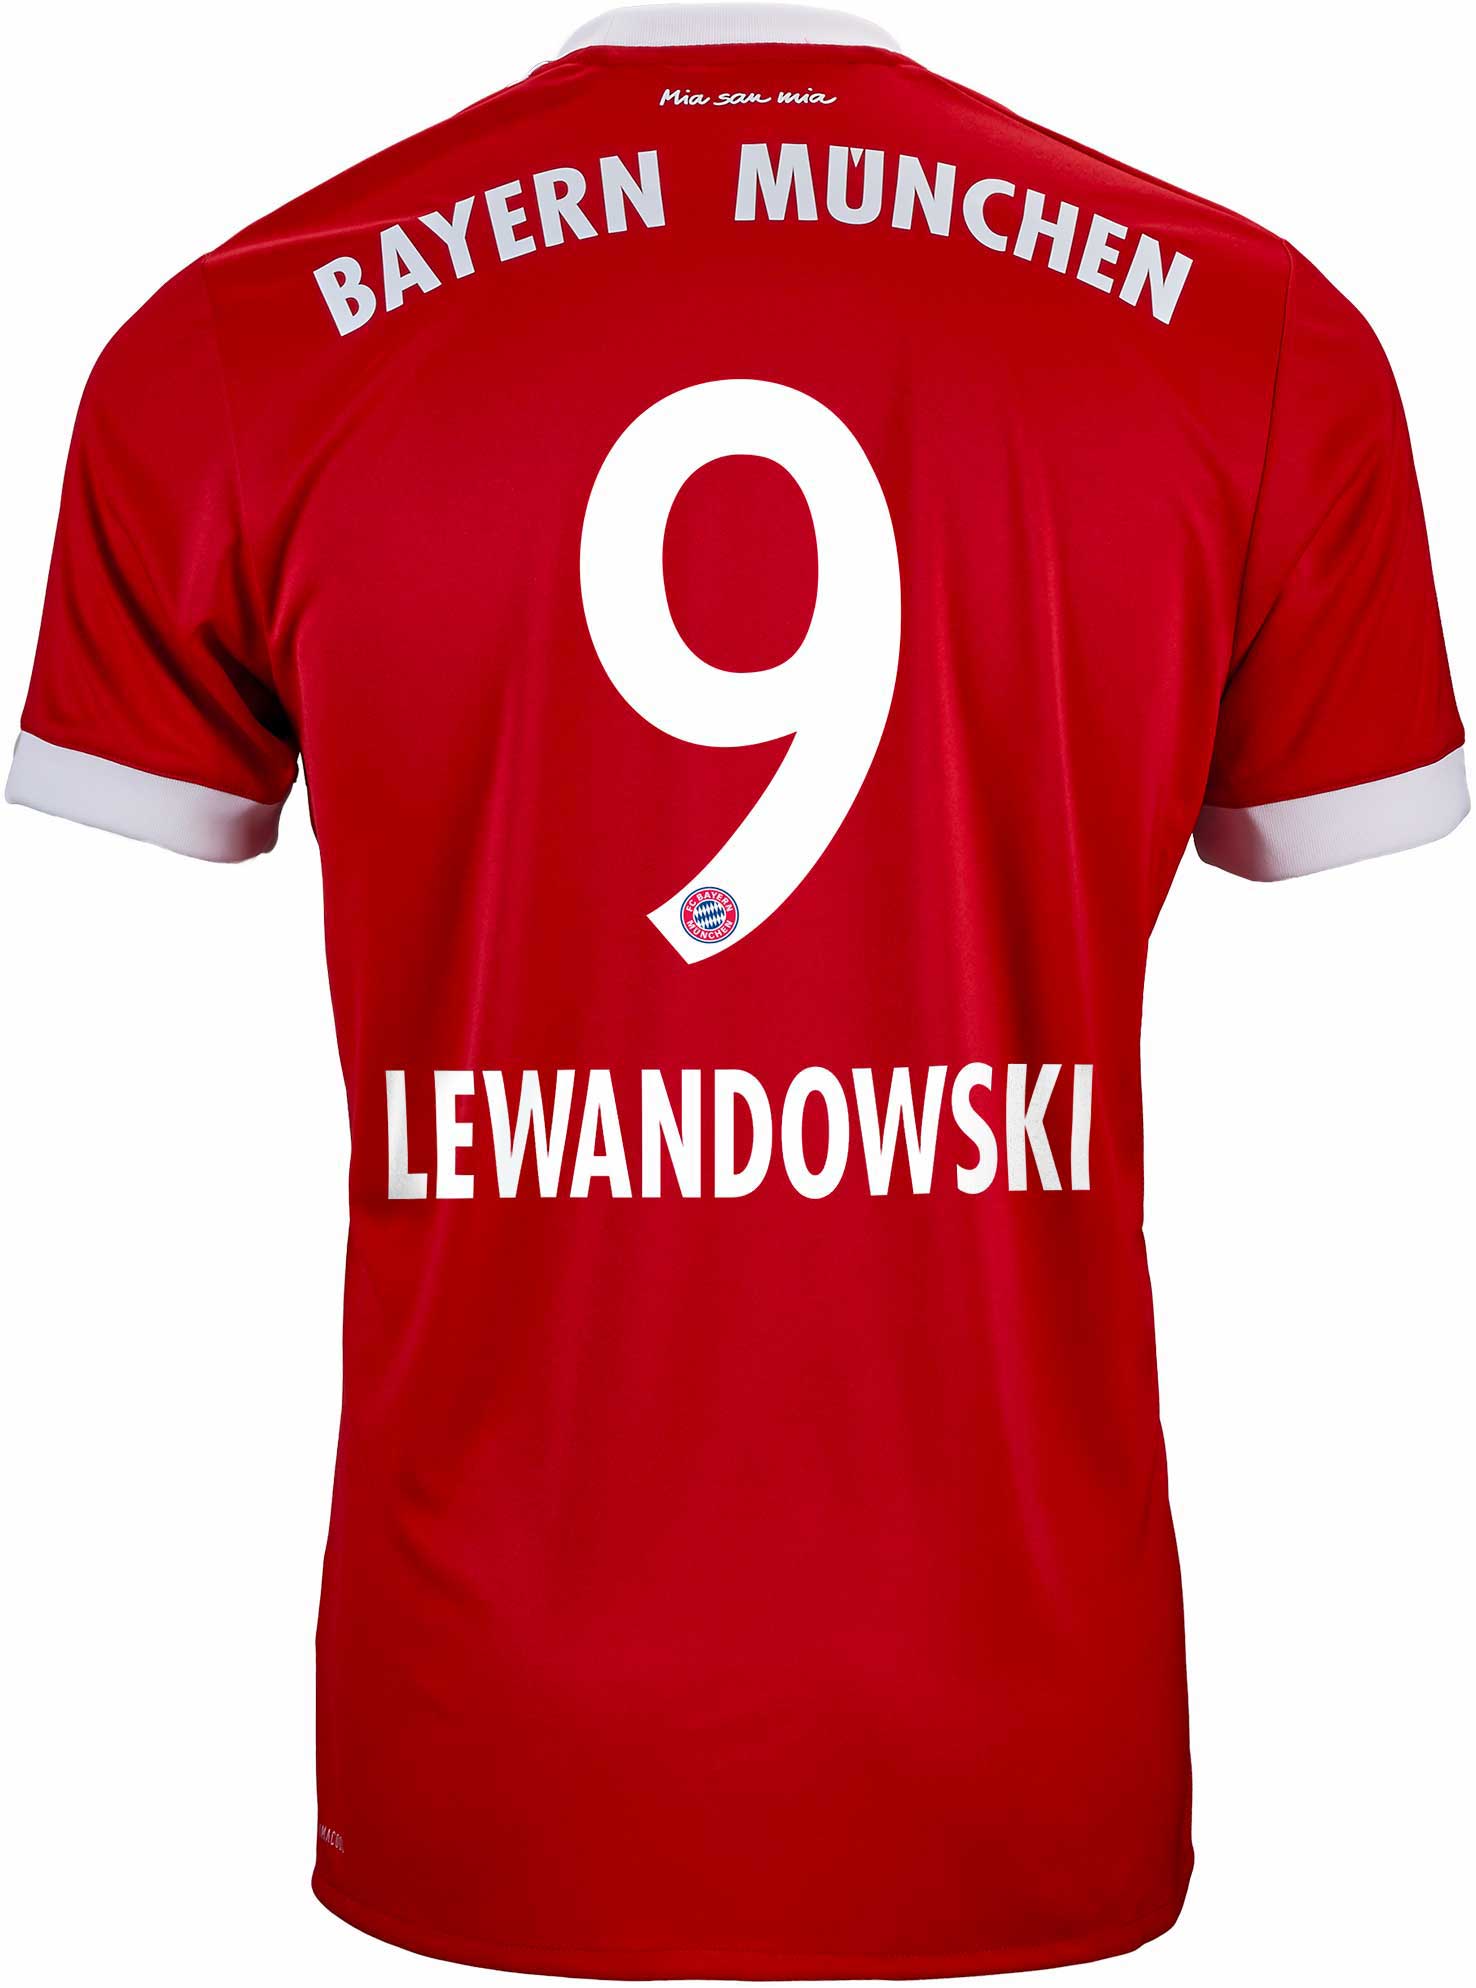 lewandowski bayern jersey